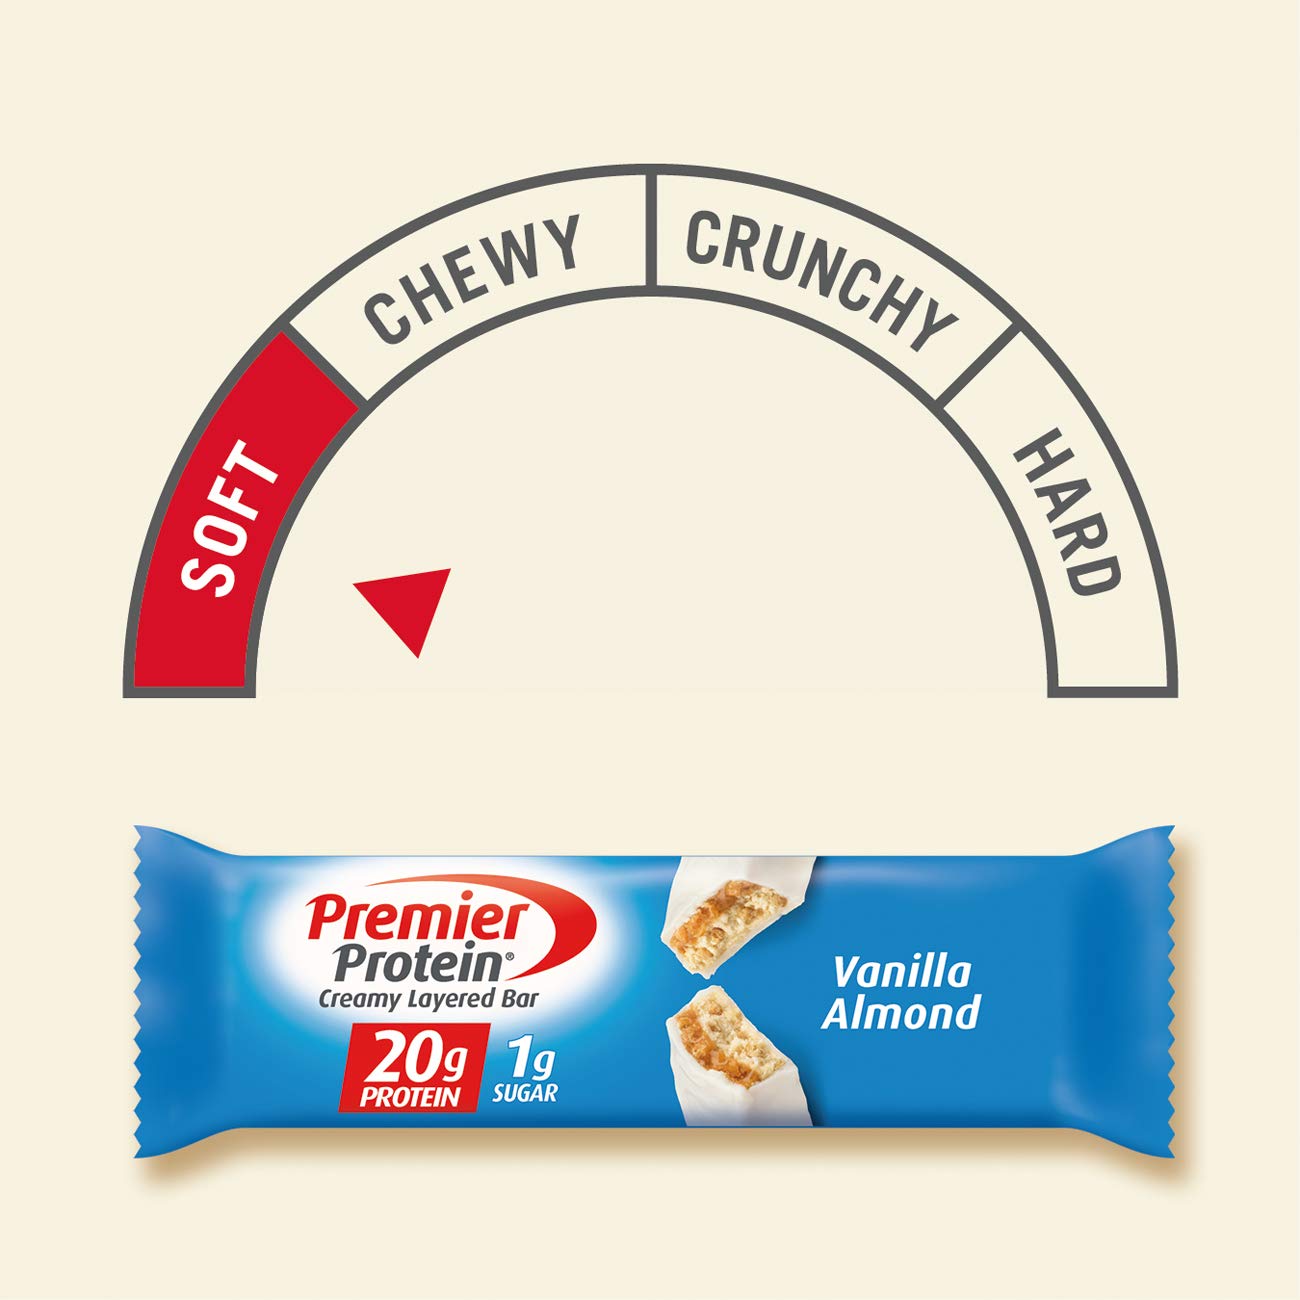 Premier Protein 20g Protein bar, Vanilla Almond, 10 Count